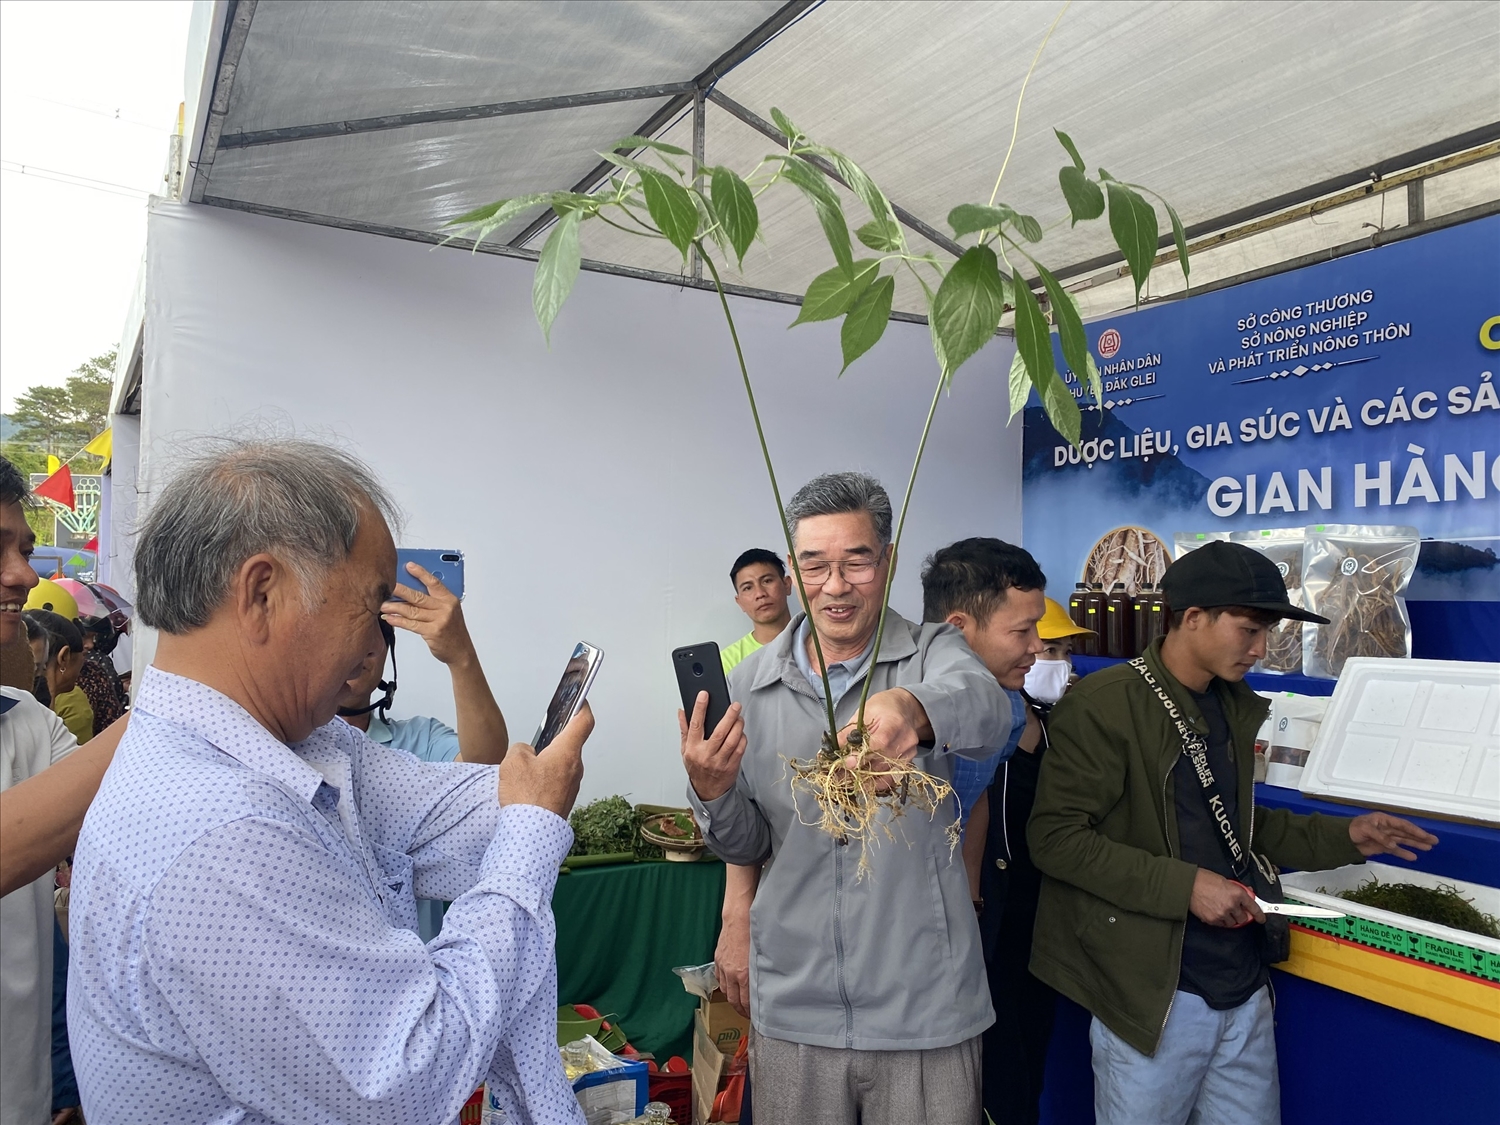 Sâm Ngọc Linh do đồng bào DTTS ở huyện Đăk Glei trồng luôn thu hút sự quan tâm của khách hàng khi đến Chợ phiên